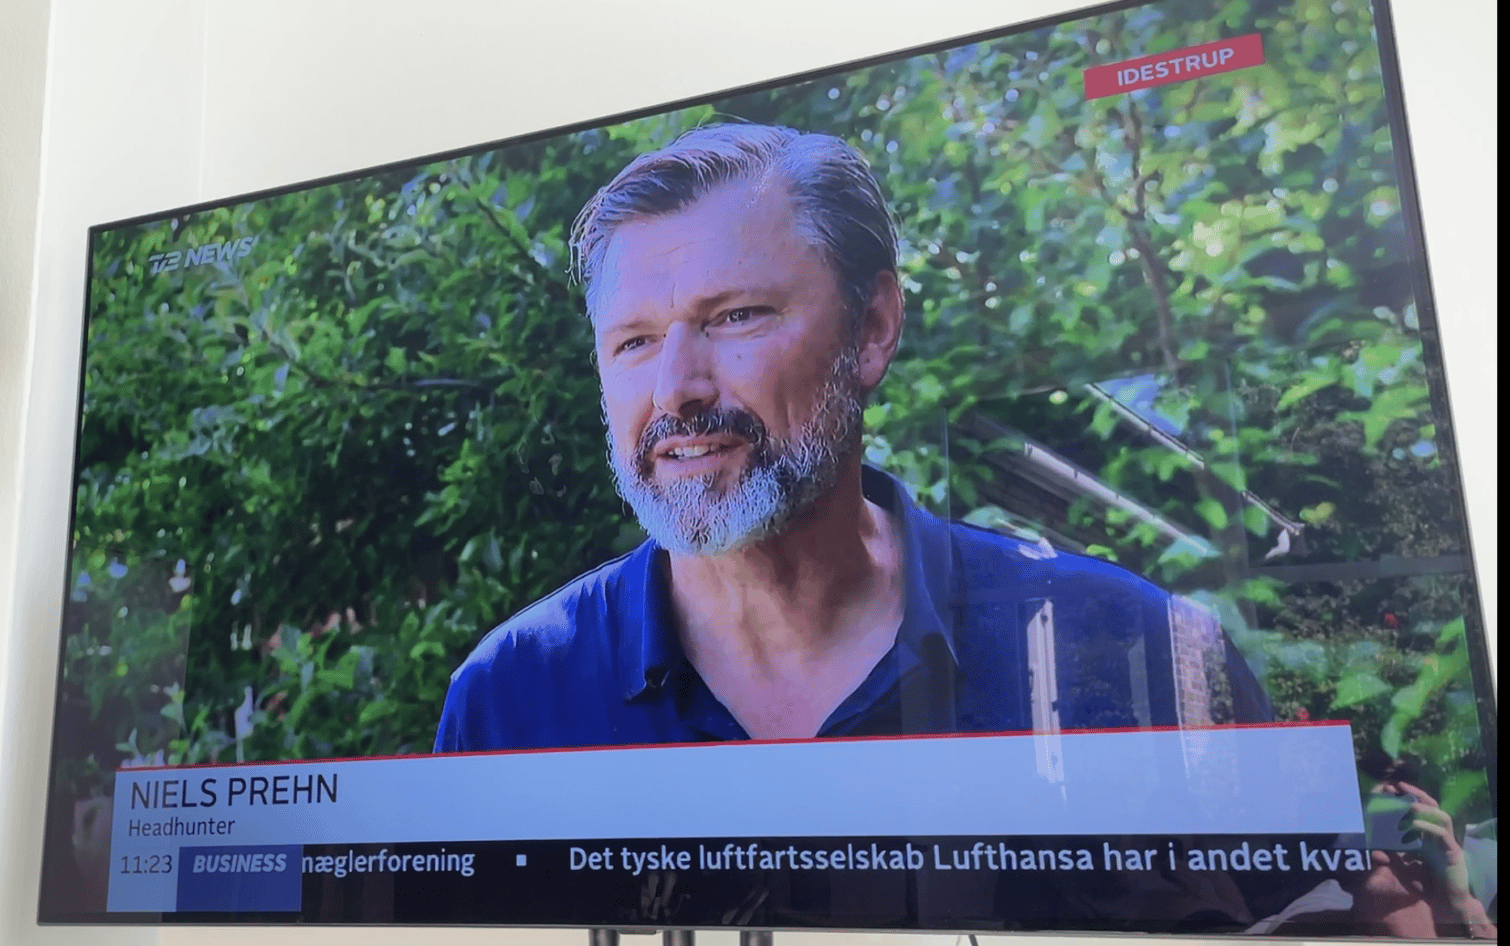 TV2 News Medicinsk vægttab | Dansk online lægeklinik | Coach og app